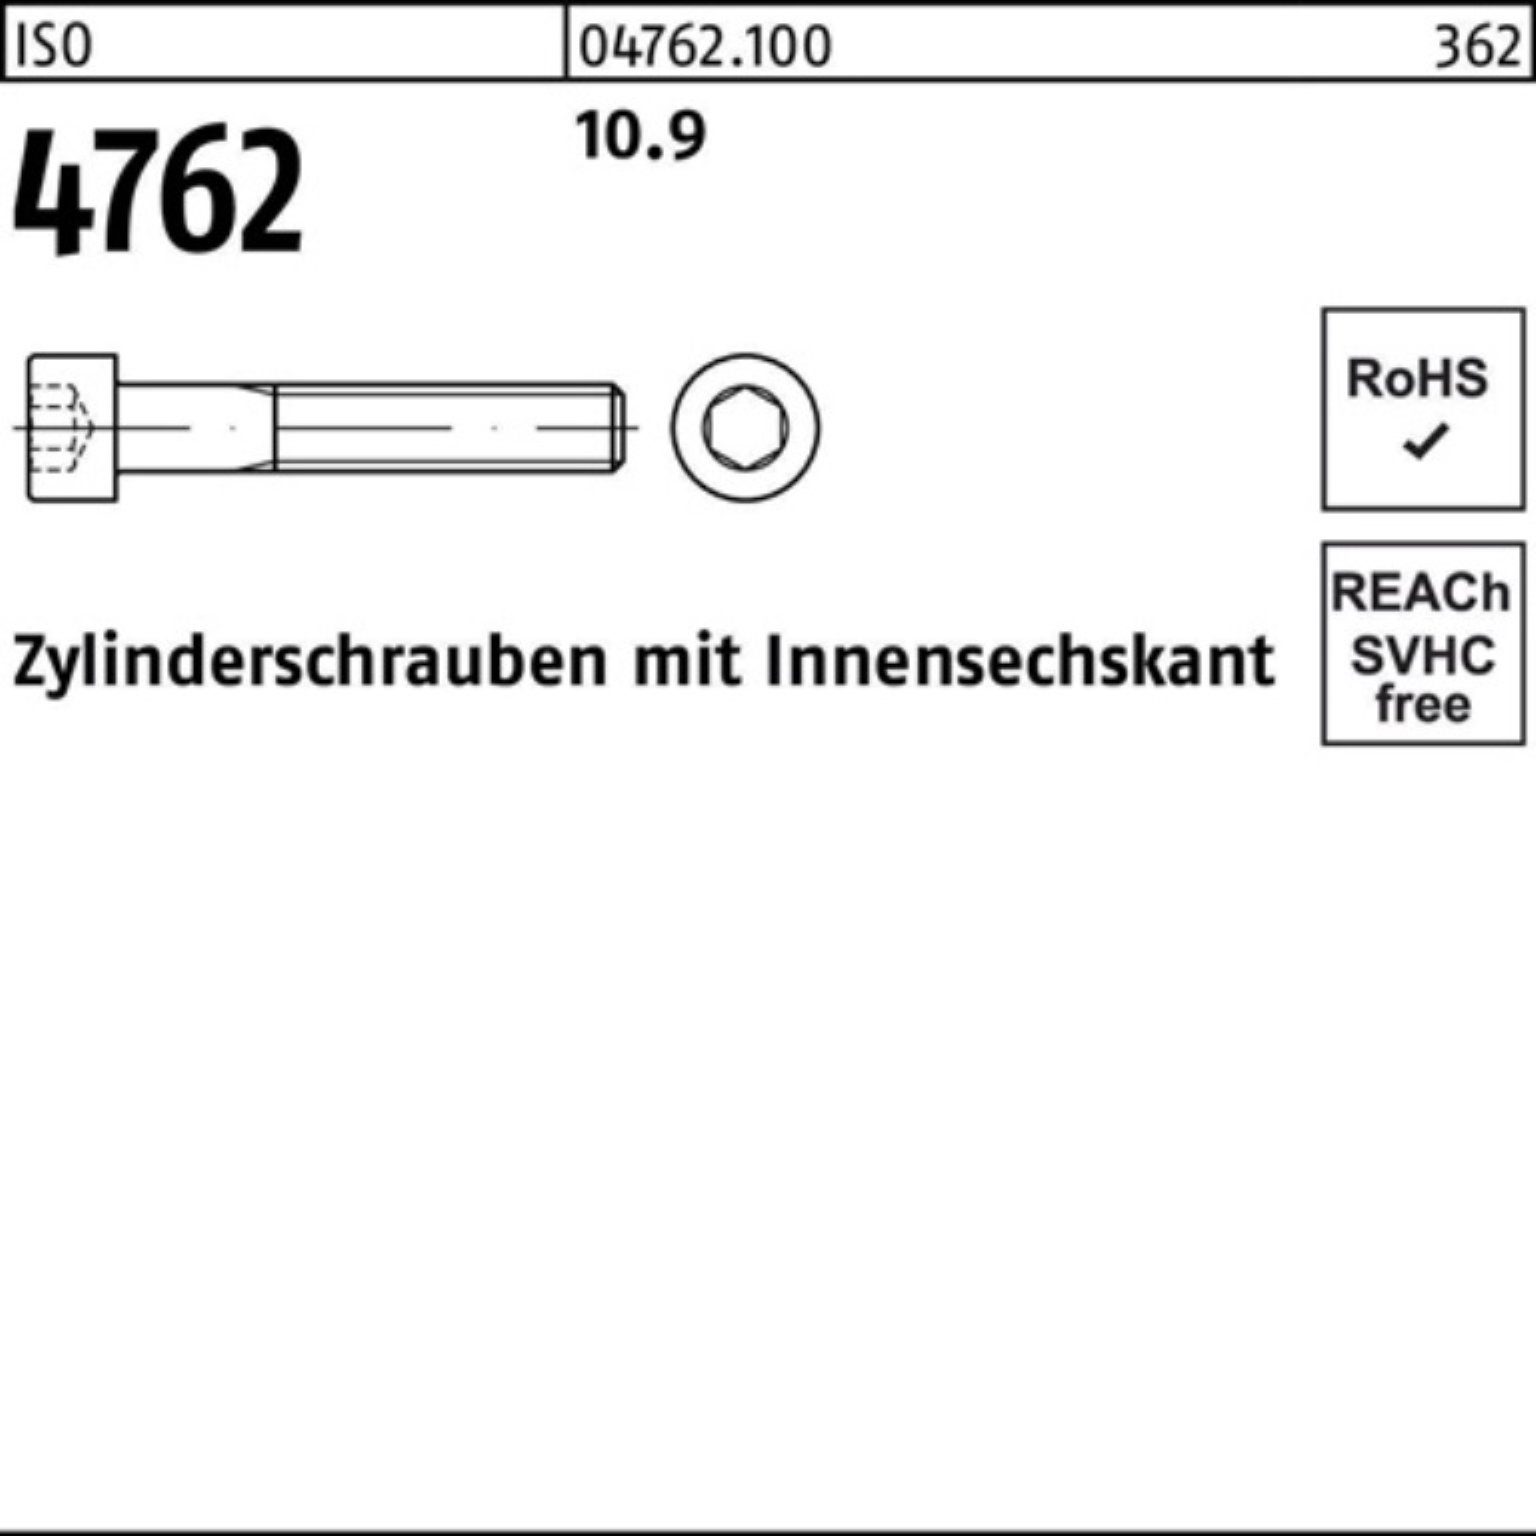 120 100er Reyher 1 Zylinderschraube Pack Innen-6kt M33x Stück 4762 10.9 ISO Zylinderschraube